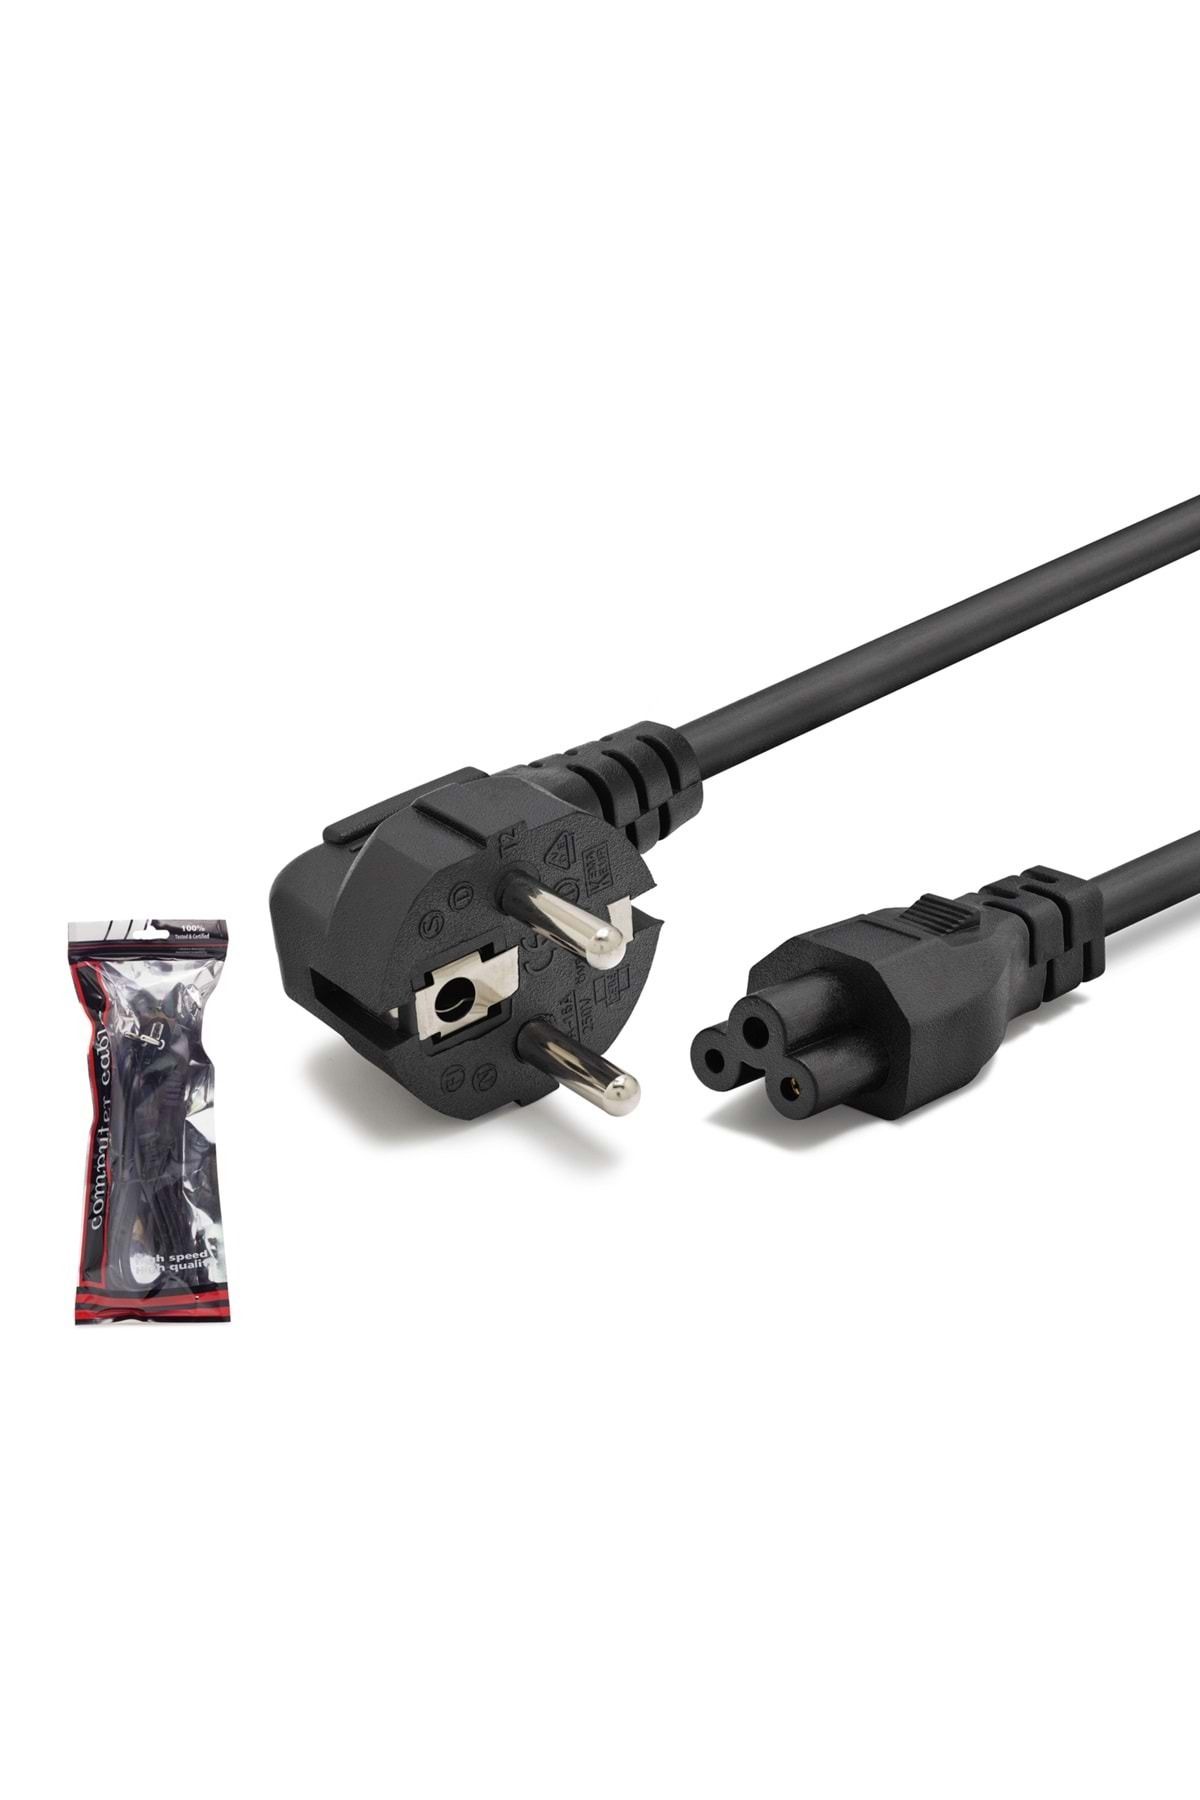 HADRON Hdx5524 Yonca Power Kablo Poşetli 0.75mm 1.2m Siyah 500w